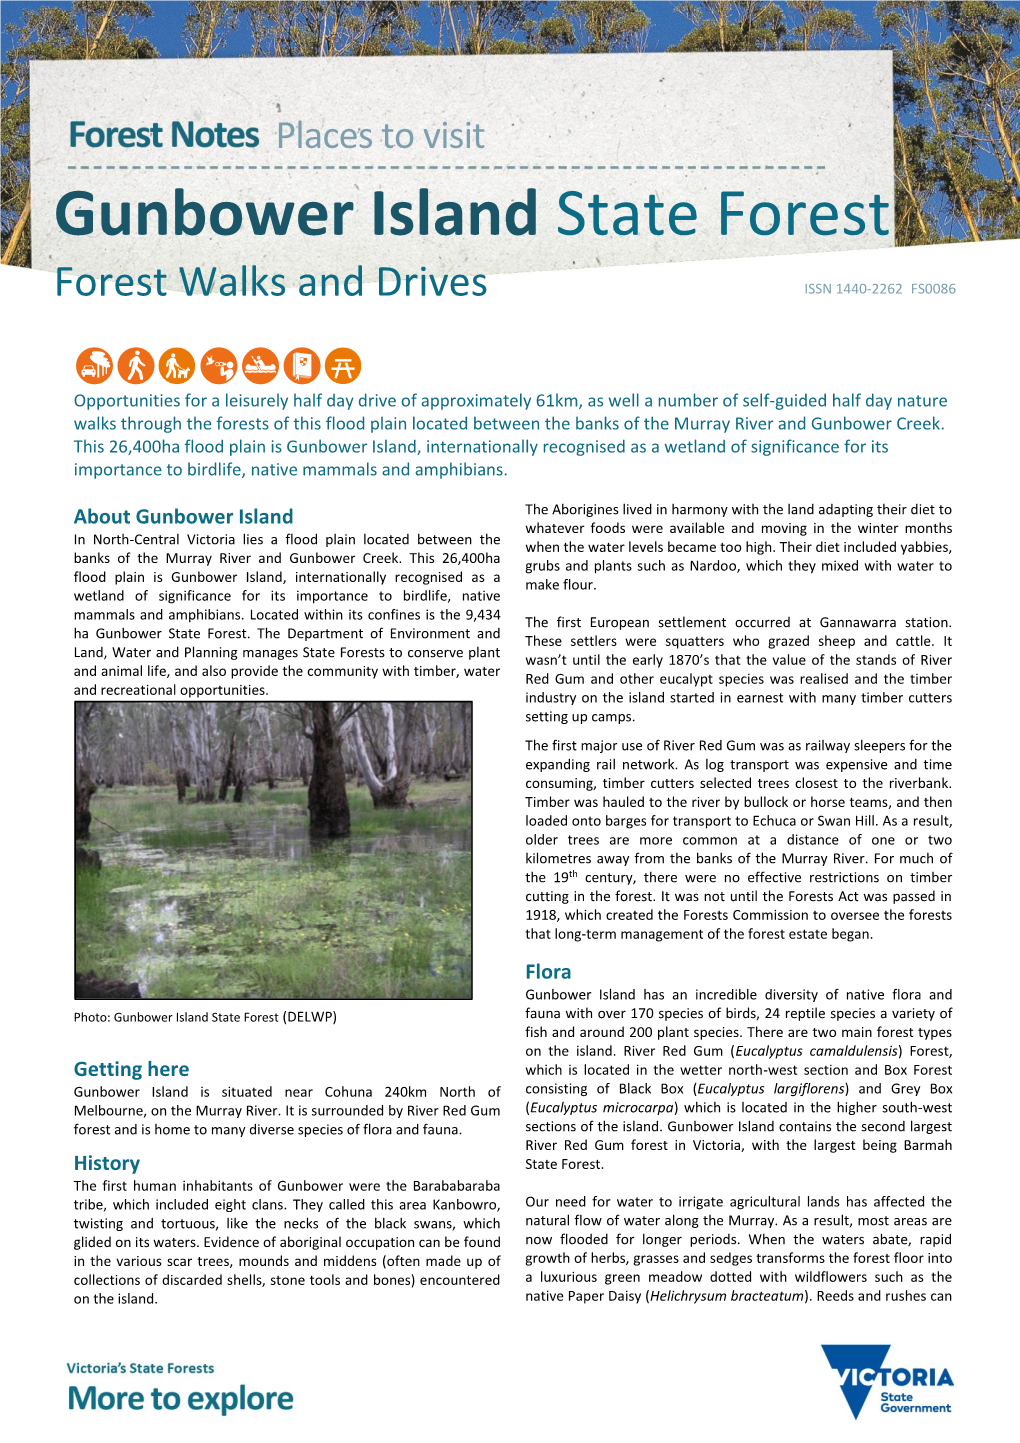 Gunbower Island State Forest